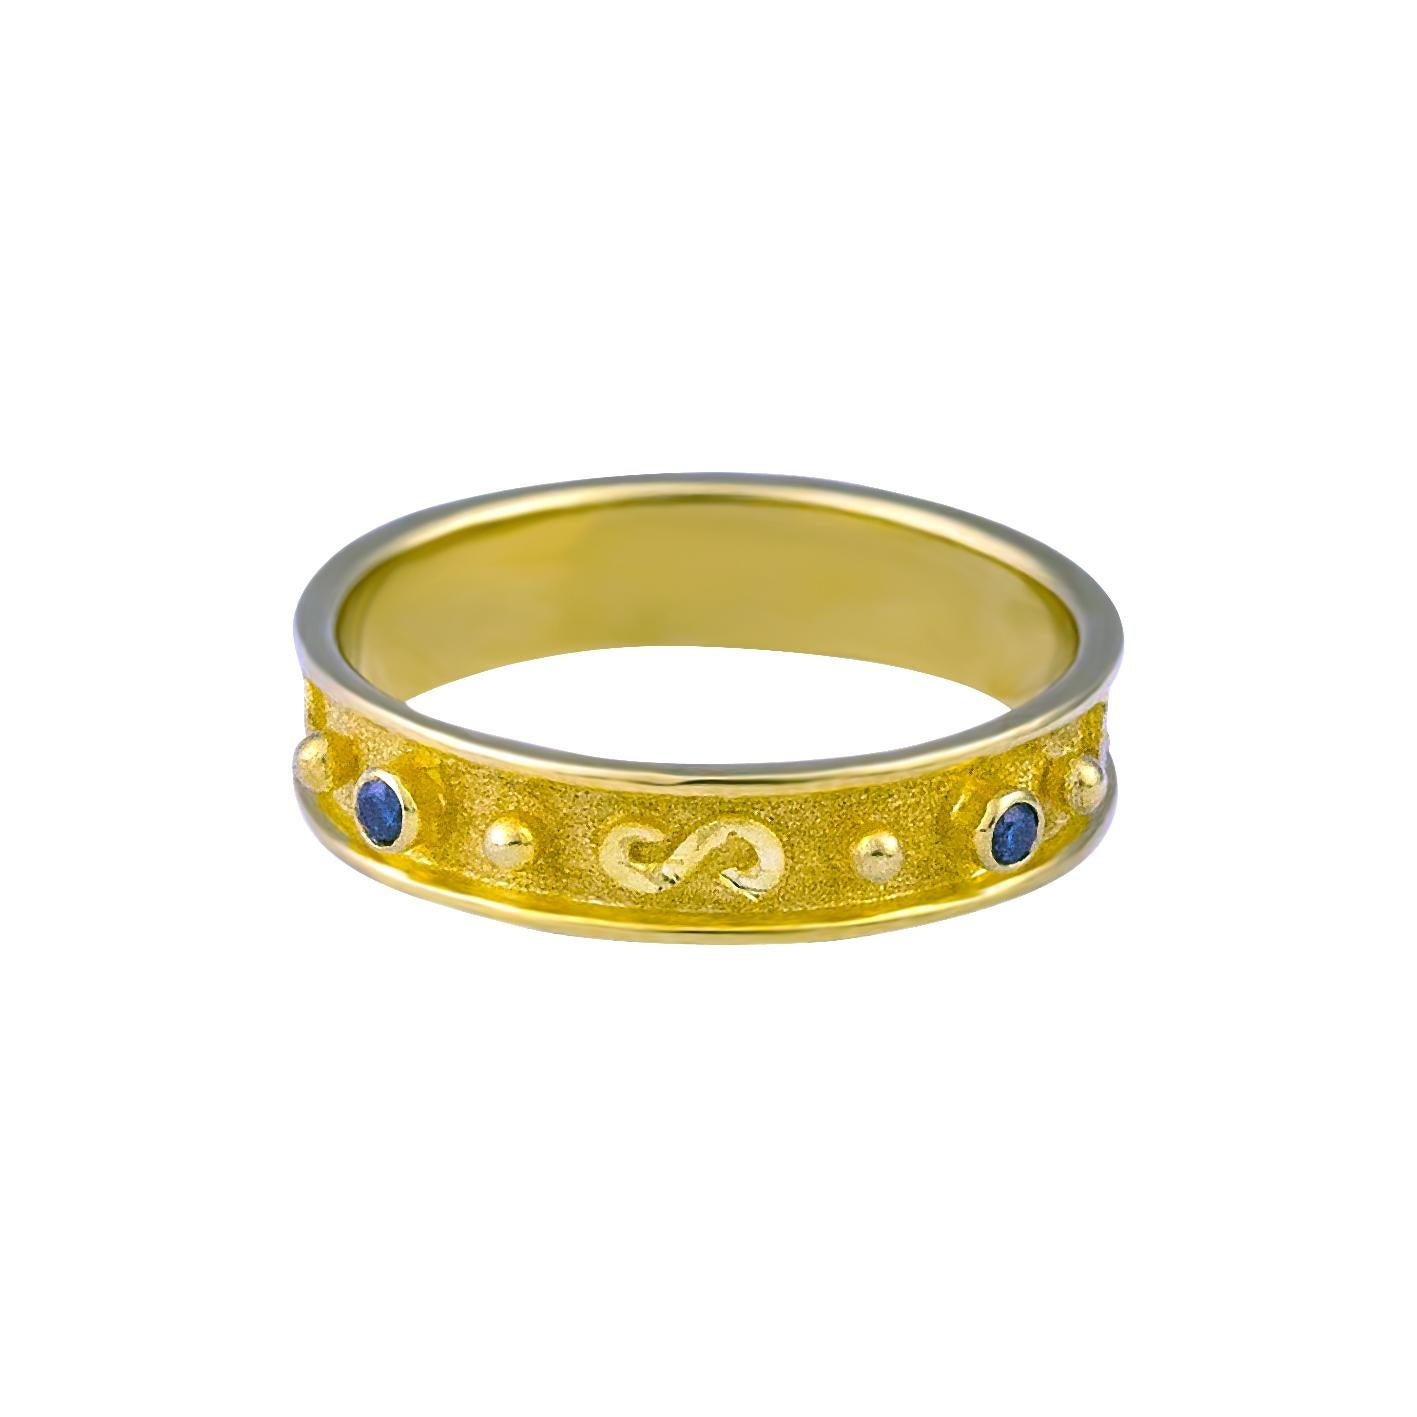 S.Georgios Design Ring ist handgefertigt aus massivem 18 Karat Gelbgold und ist mikroskopisch verziert mit Granulation Arbeit den ganzen Weg um mit Weißgold Perlen und Drähte geformt wie das Symbol des langen Lebens, der griechische Schlüssel